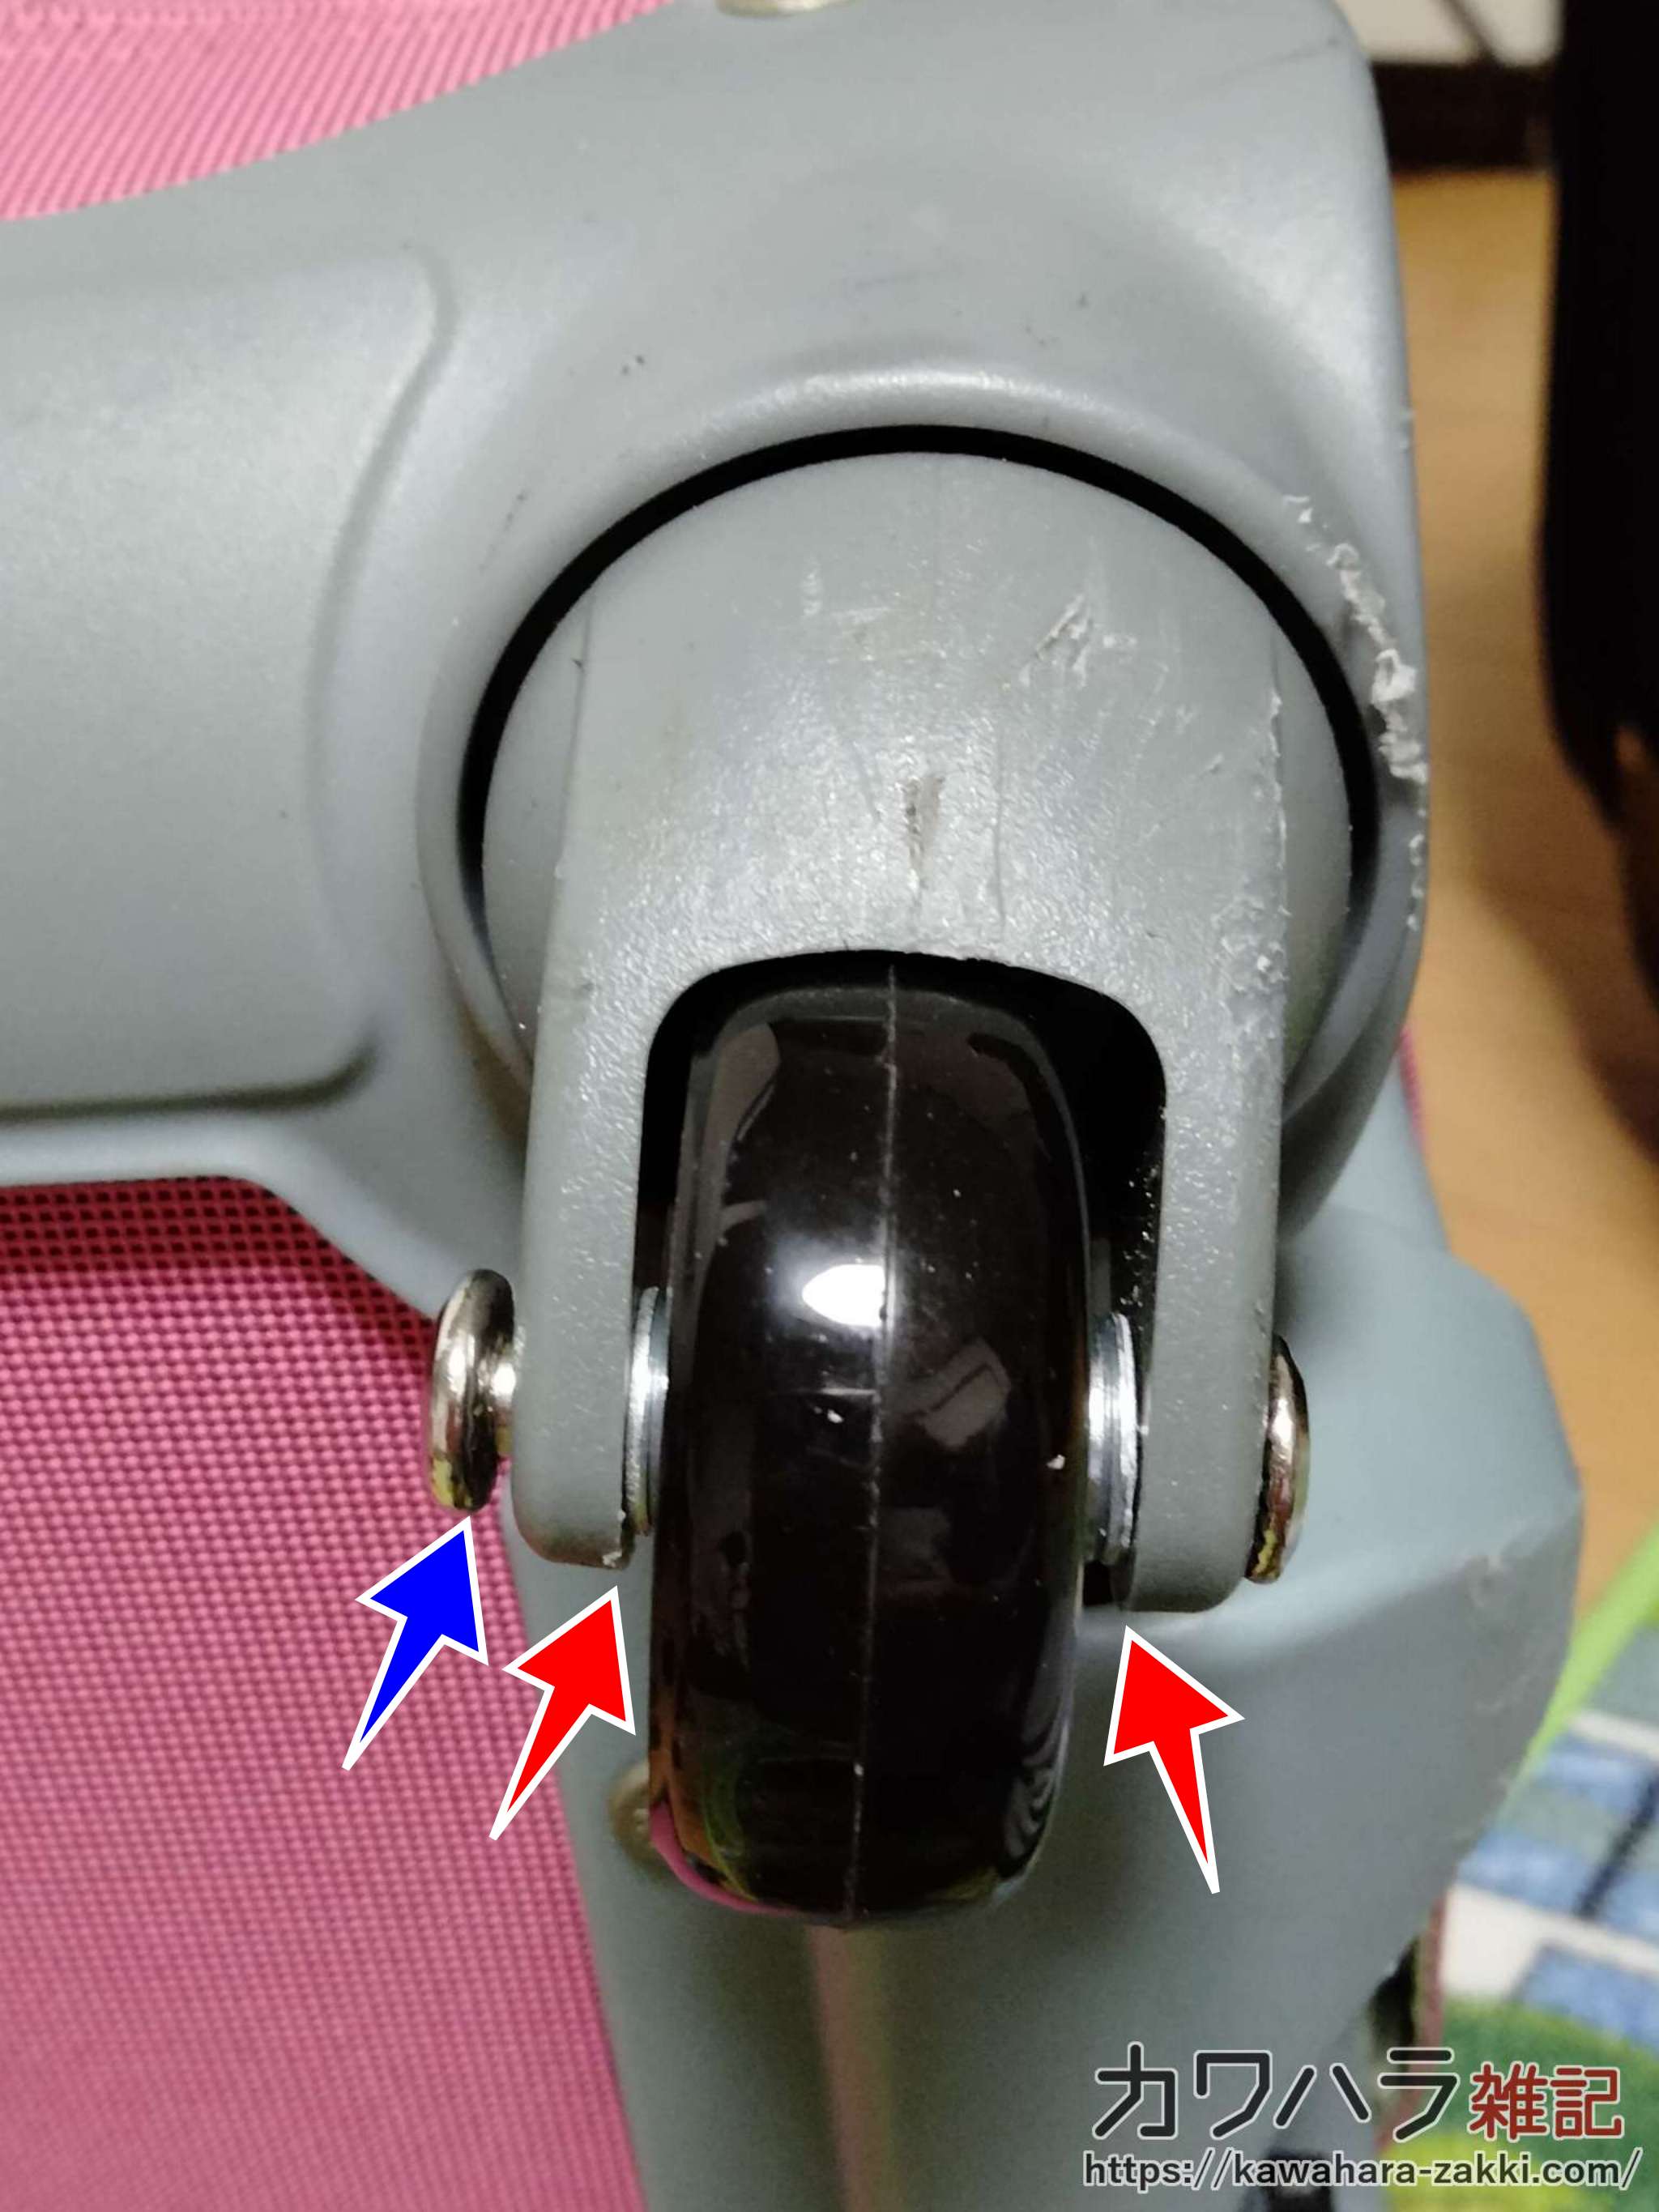 ぼろぼろになったスーツケースの車輪を修理する方法 | カワハラ雑記